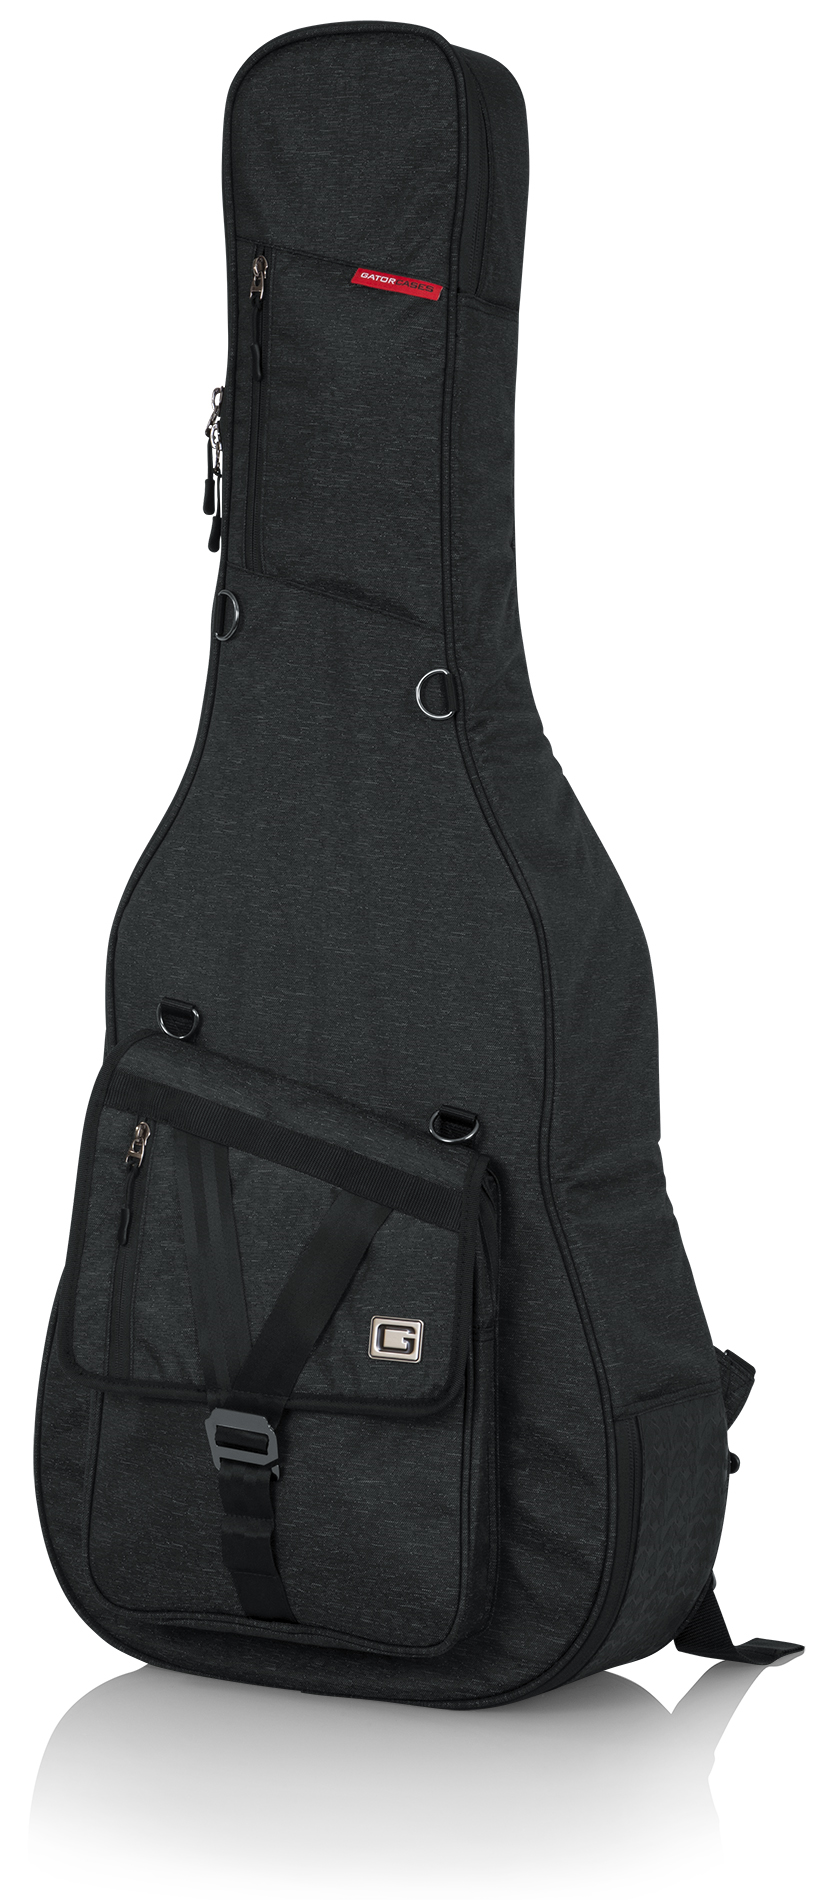 GT-ACOUSTIC-BLK Transit Acoustic Guitar Bag; Charcoal